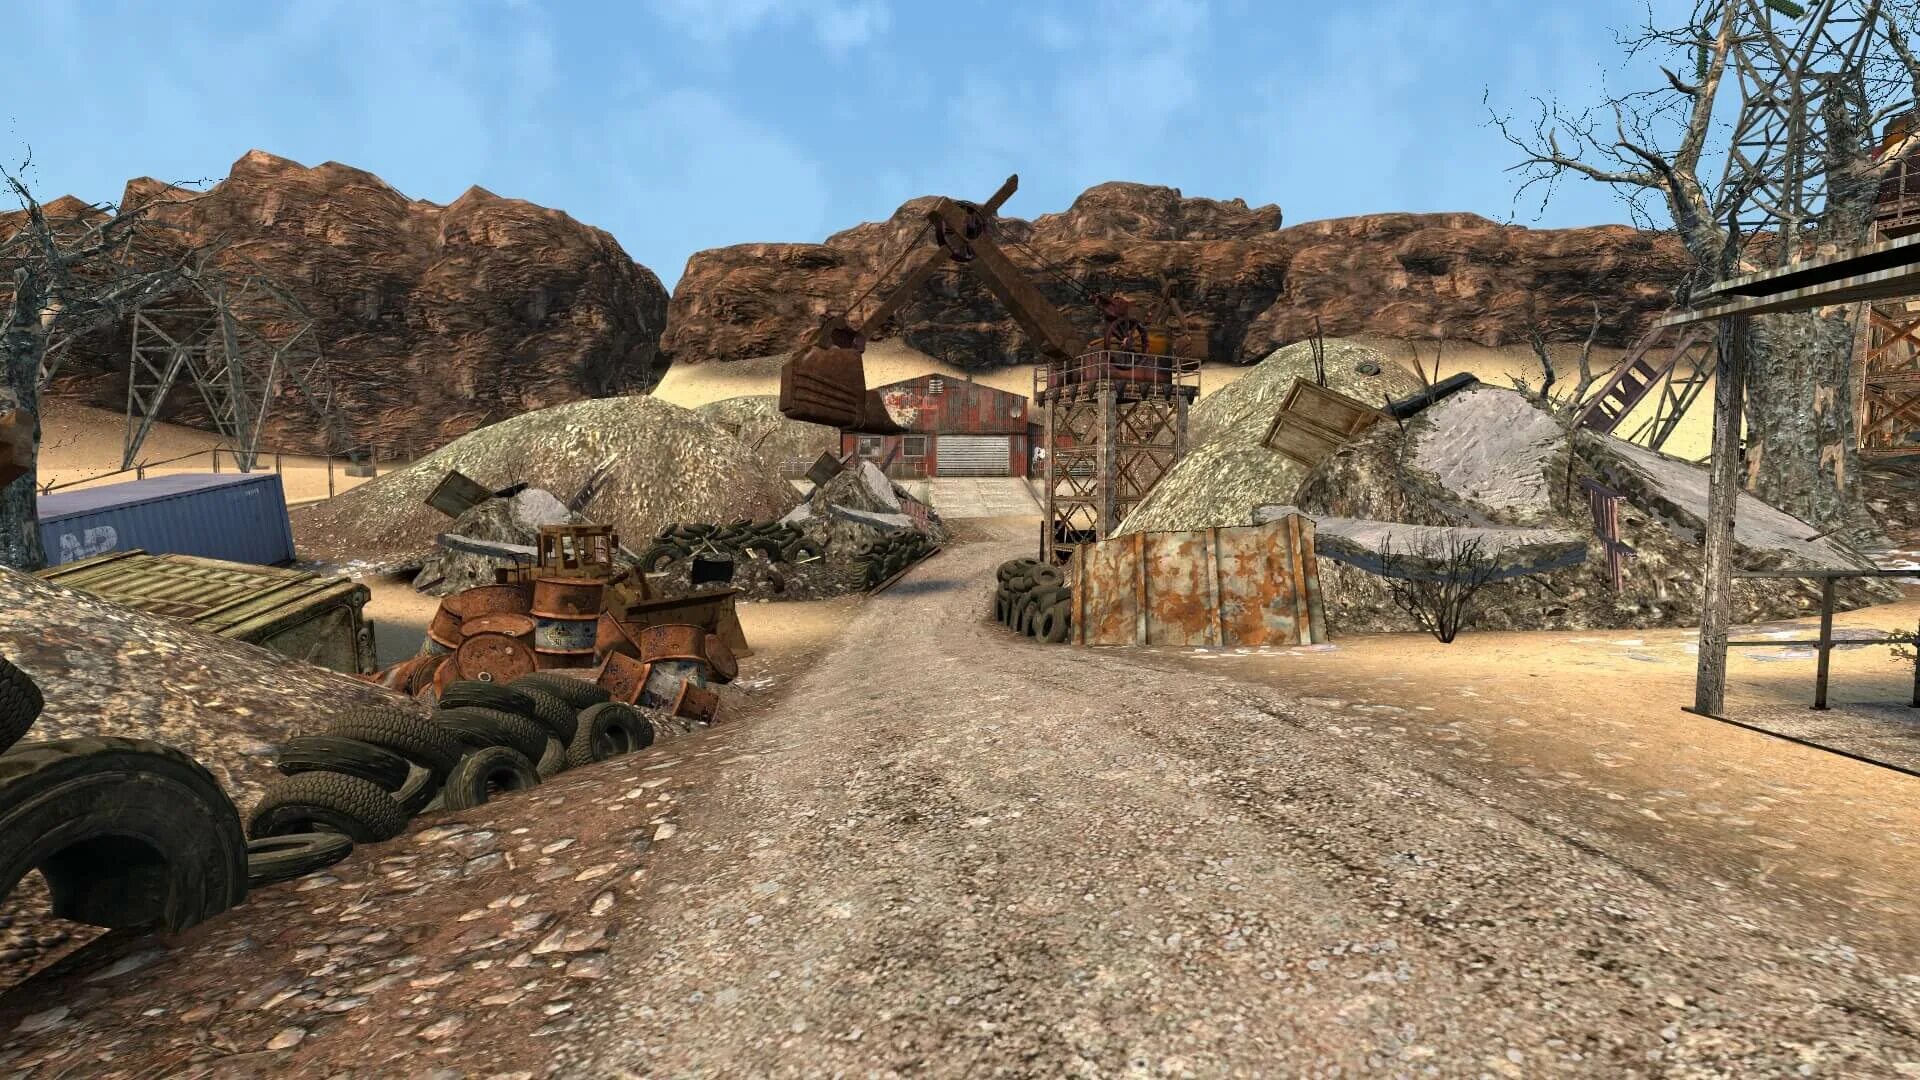 Игры на движке соурс. Движок соурс. Garry's Mod пустыня. Source 2 движок. Fallout New Vegas трасса 95.